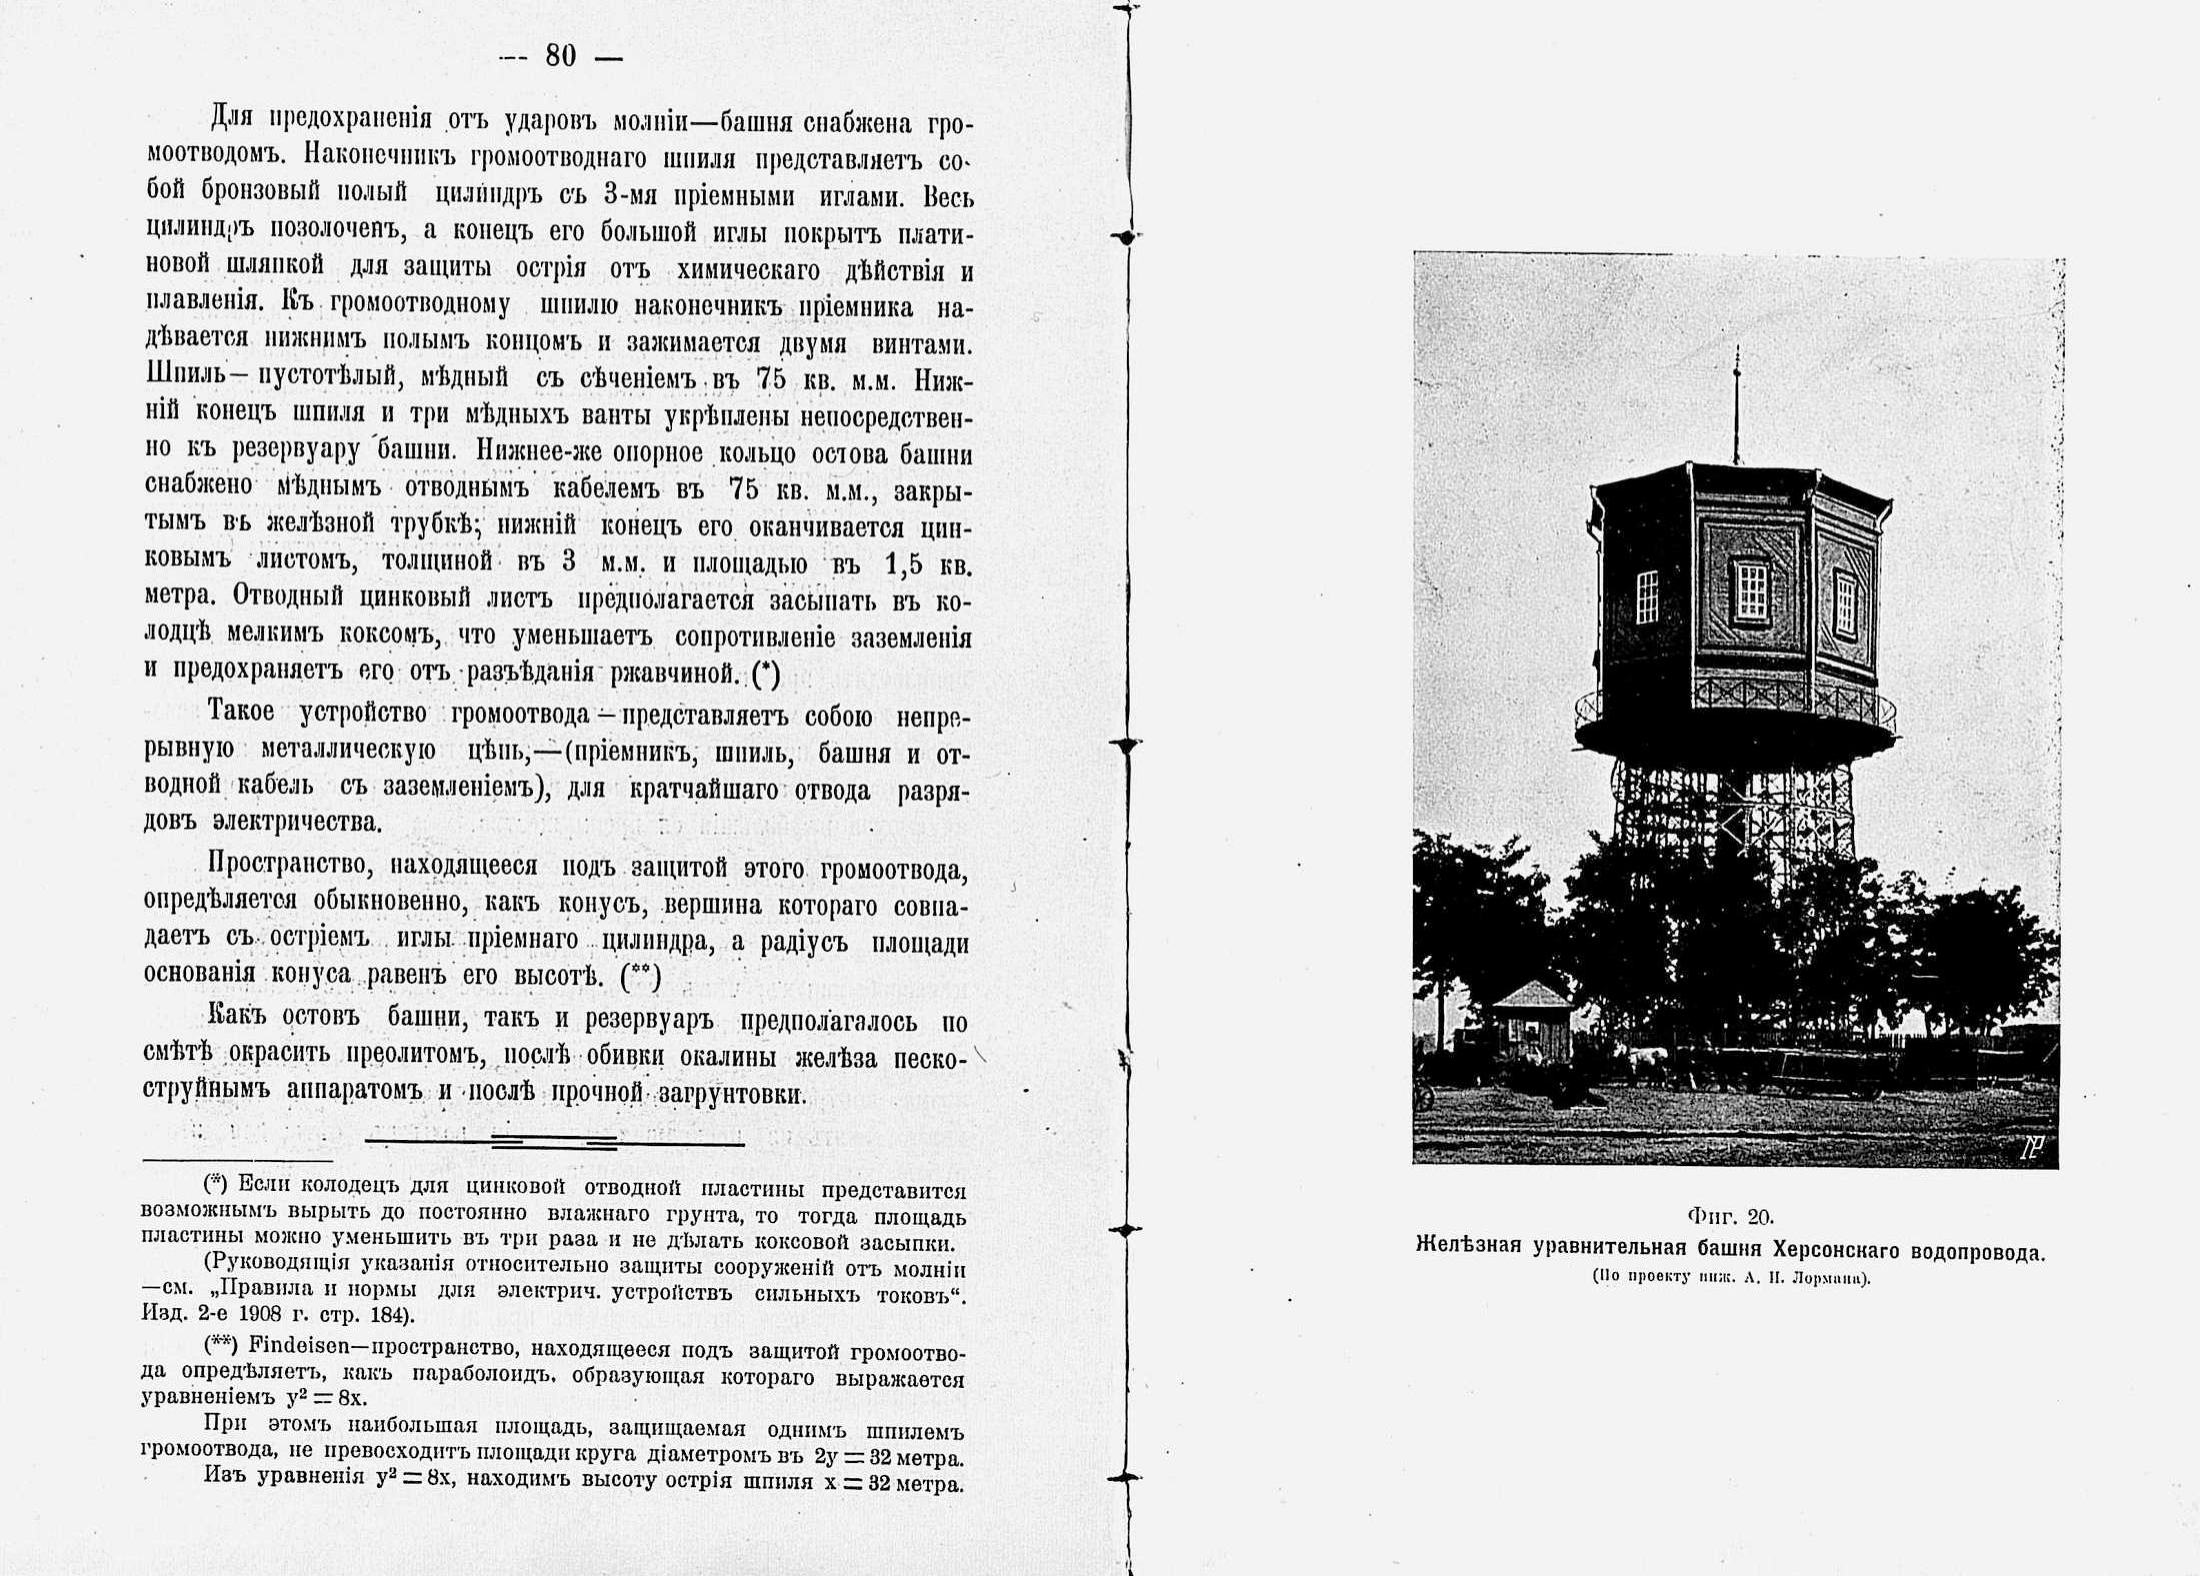 Железная уравнительная башня Херсонского водопровода. По проекту инженера Лормана